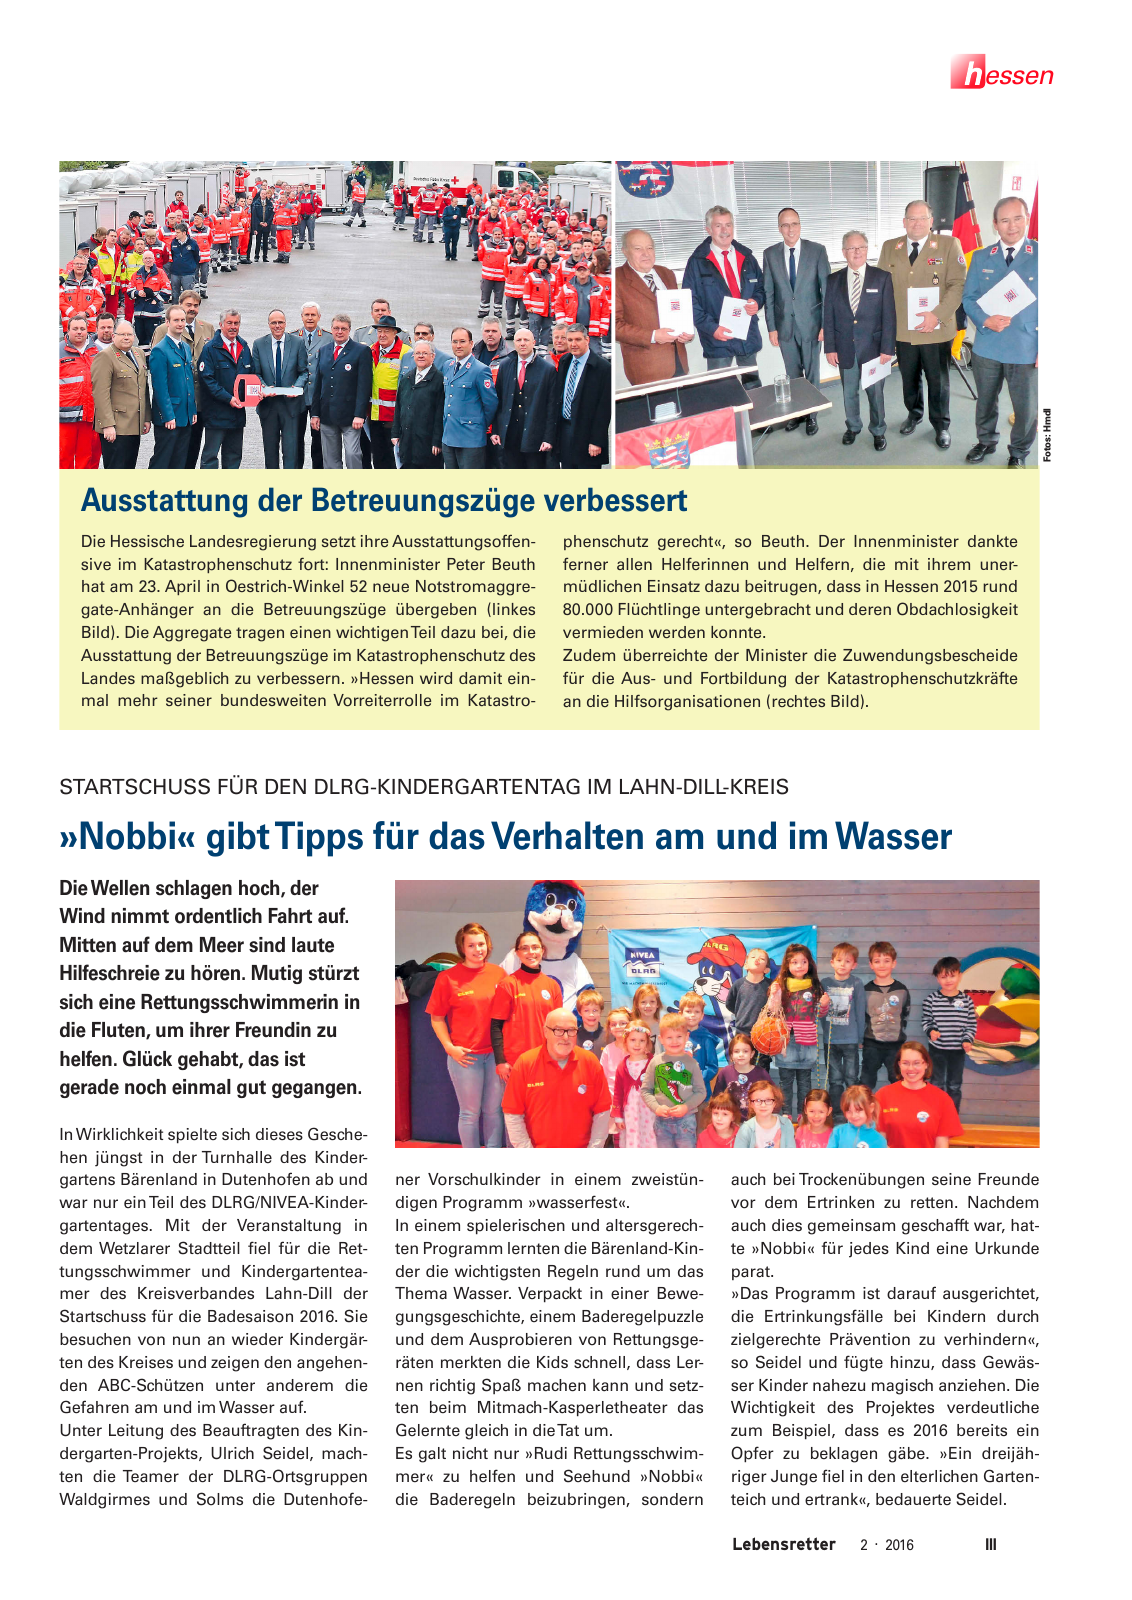 Vorschau Lebensretter 2/2016 - Regionalausgabe Hessen Seite 5